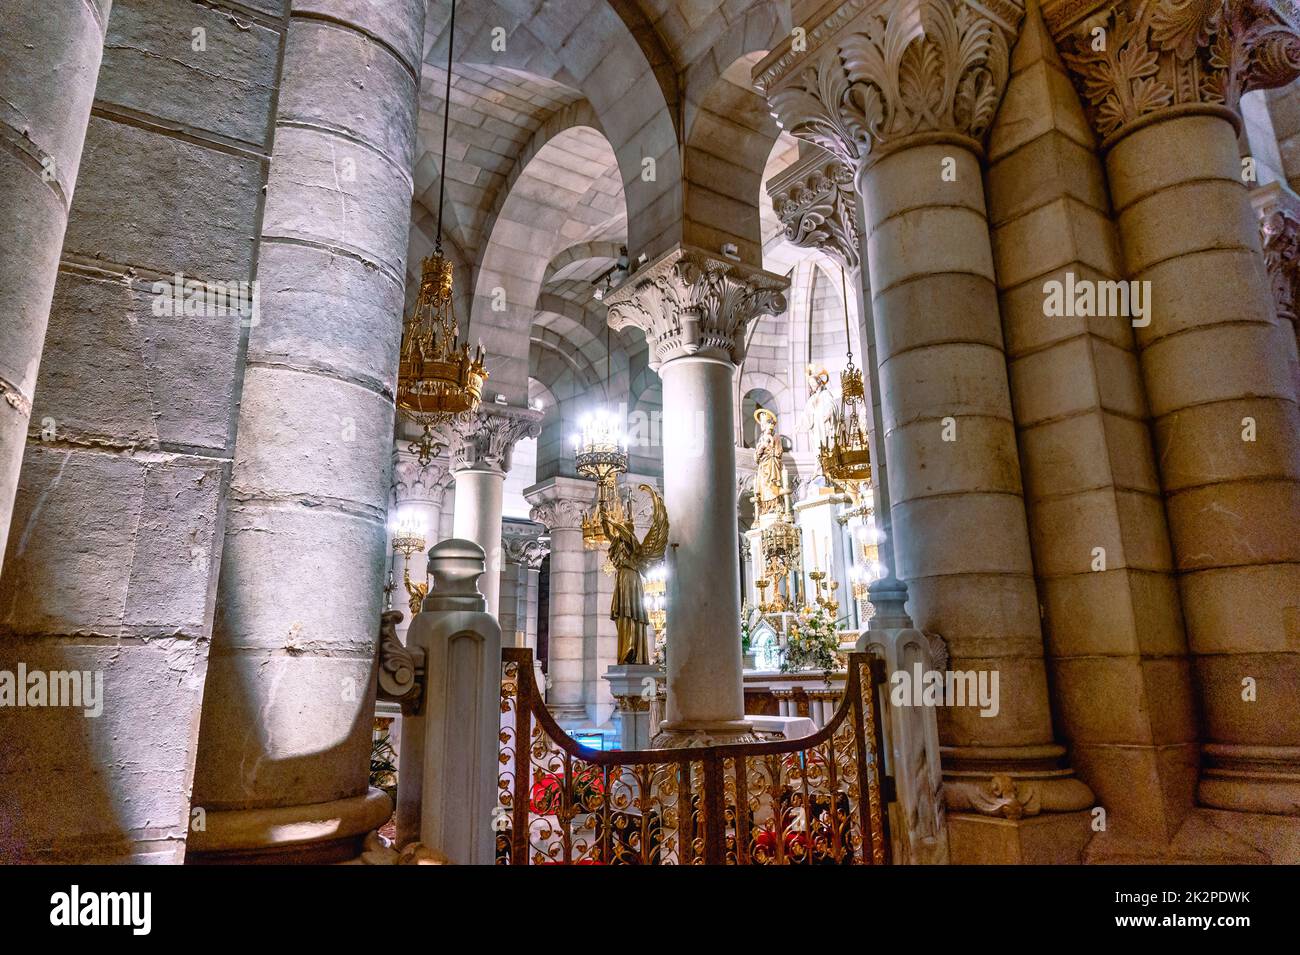 Crypte de la cathédrale d'Almudena, Madrid, Espagne, 2022. Exclusivité Alamy Banque D'Images